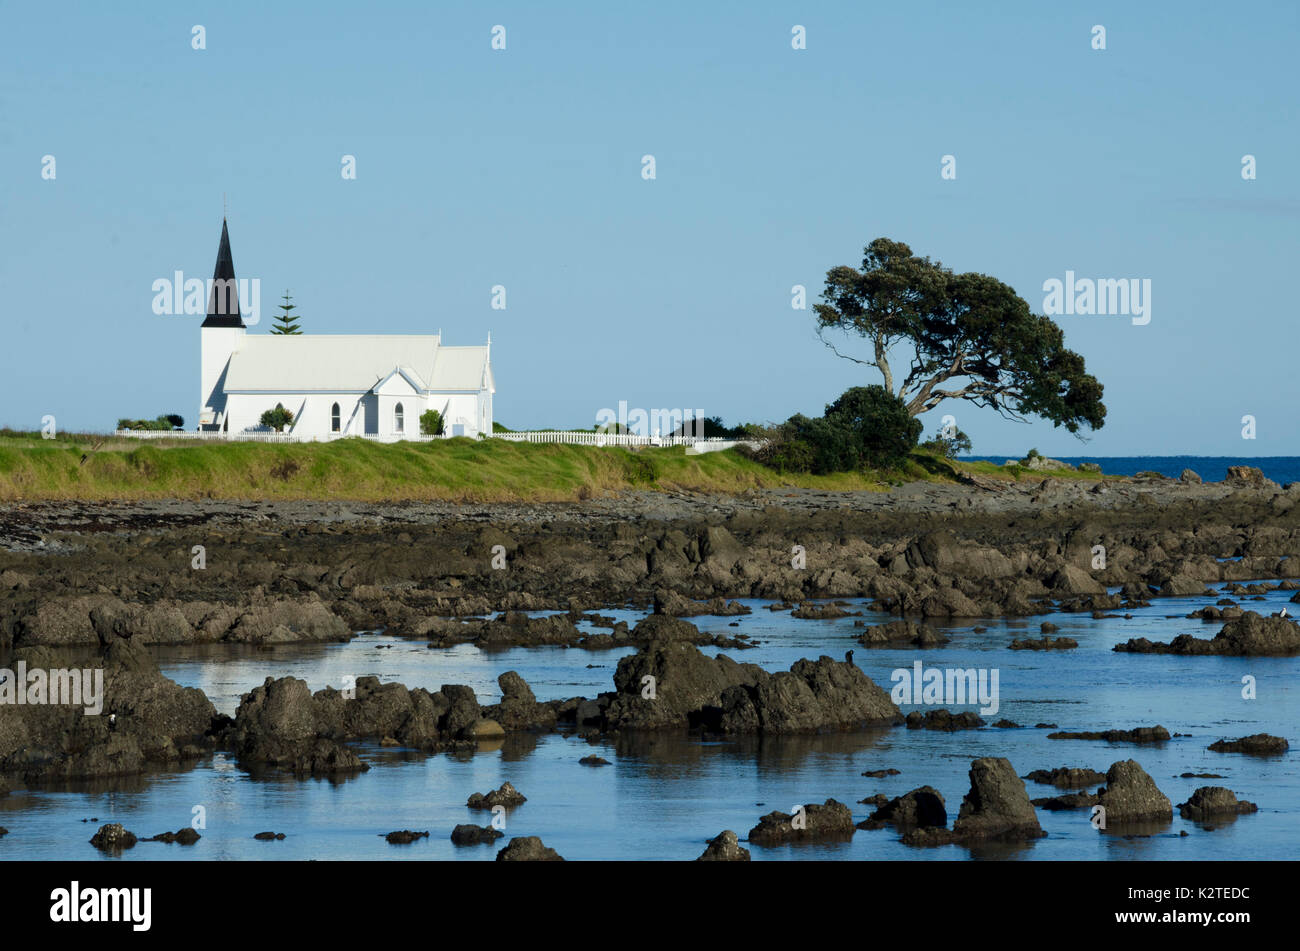 Christ Church, Raukokore, près de l'Opotoki, Bay of Plenty, île du Nord, Nouvelle-Zélande Banque D'Images